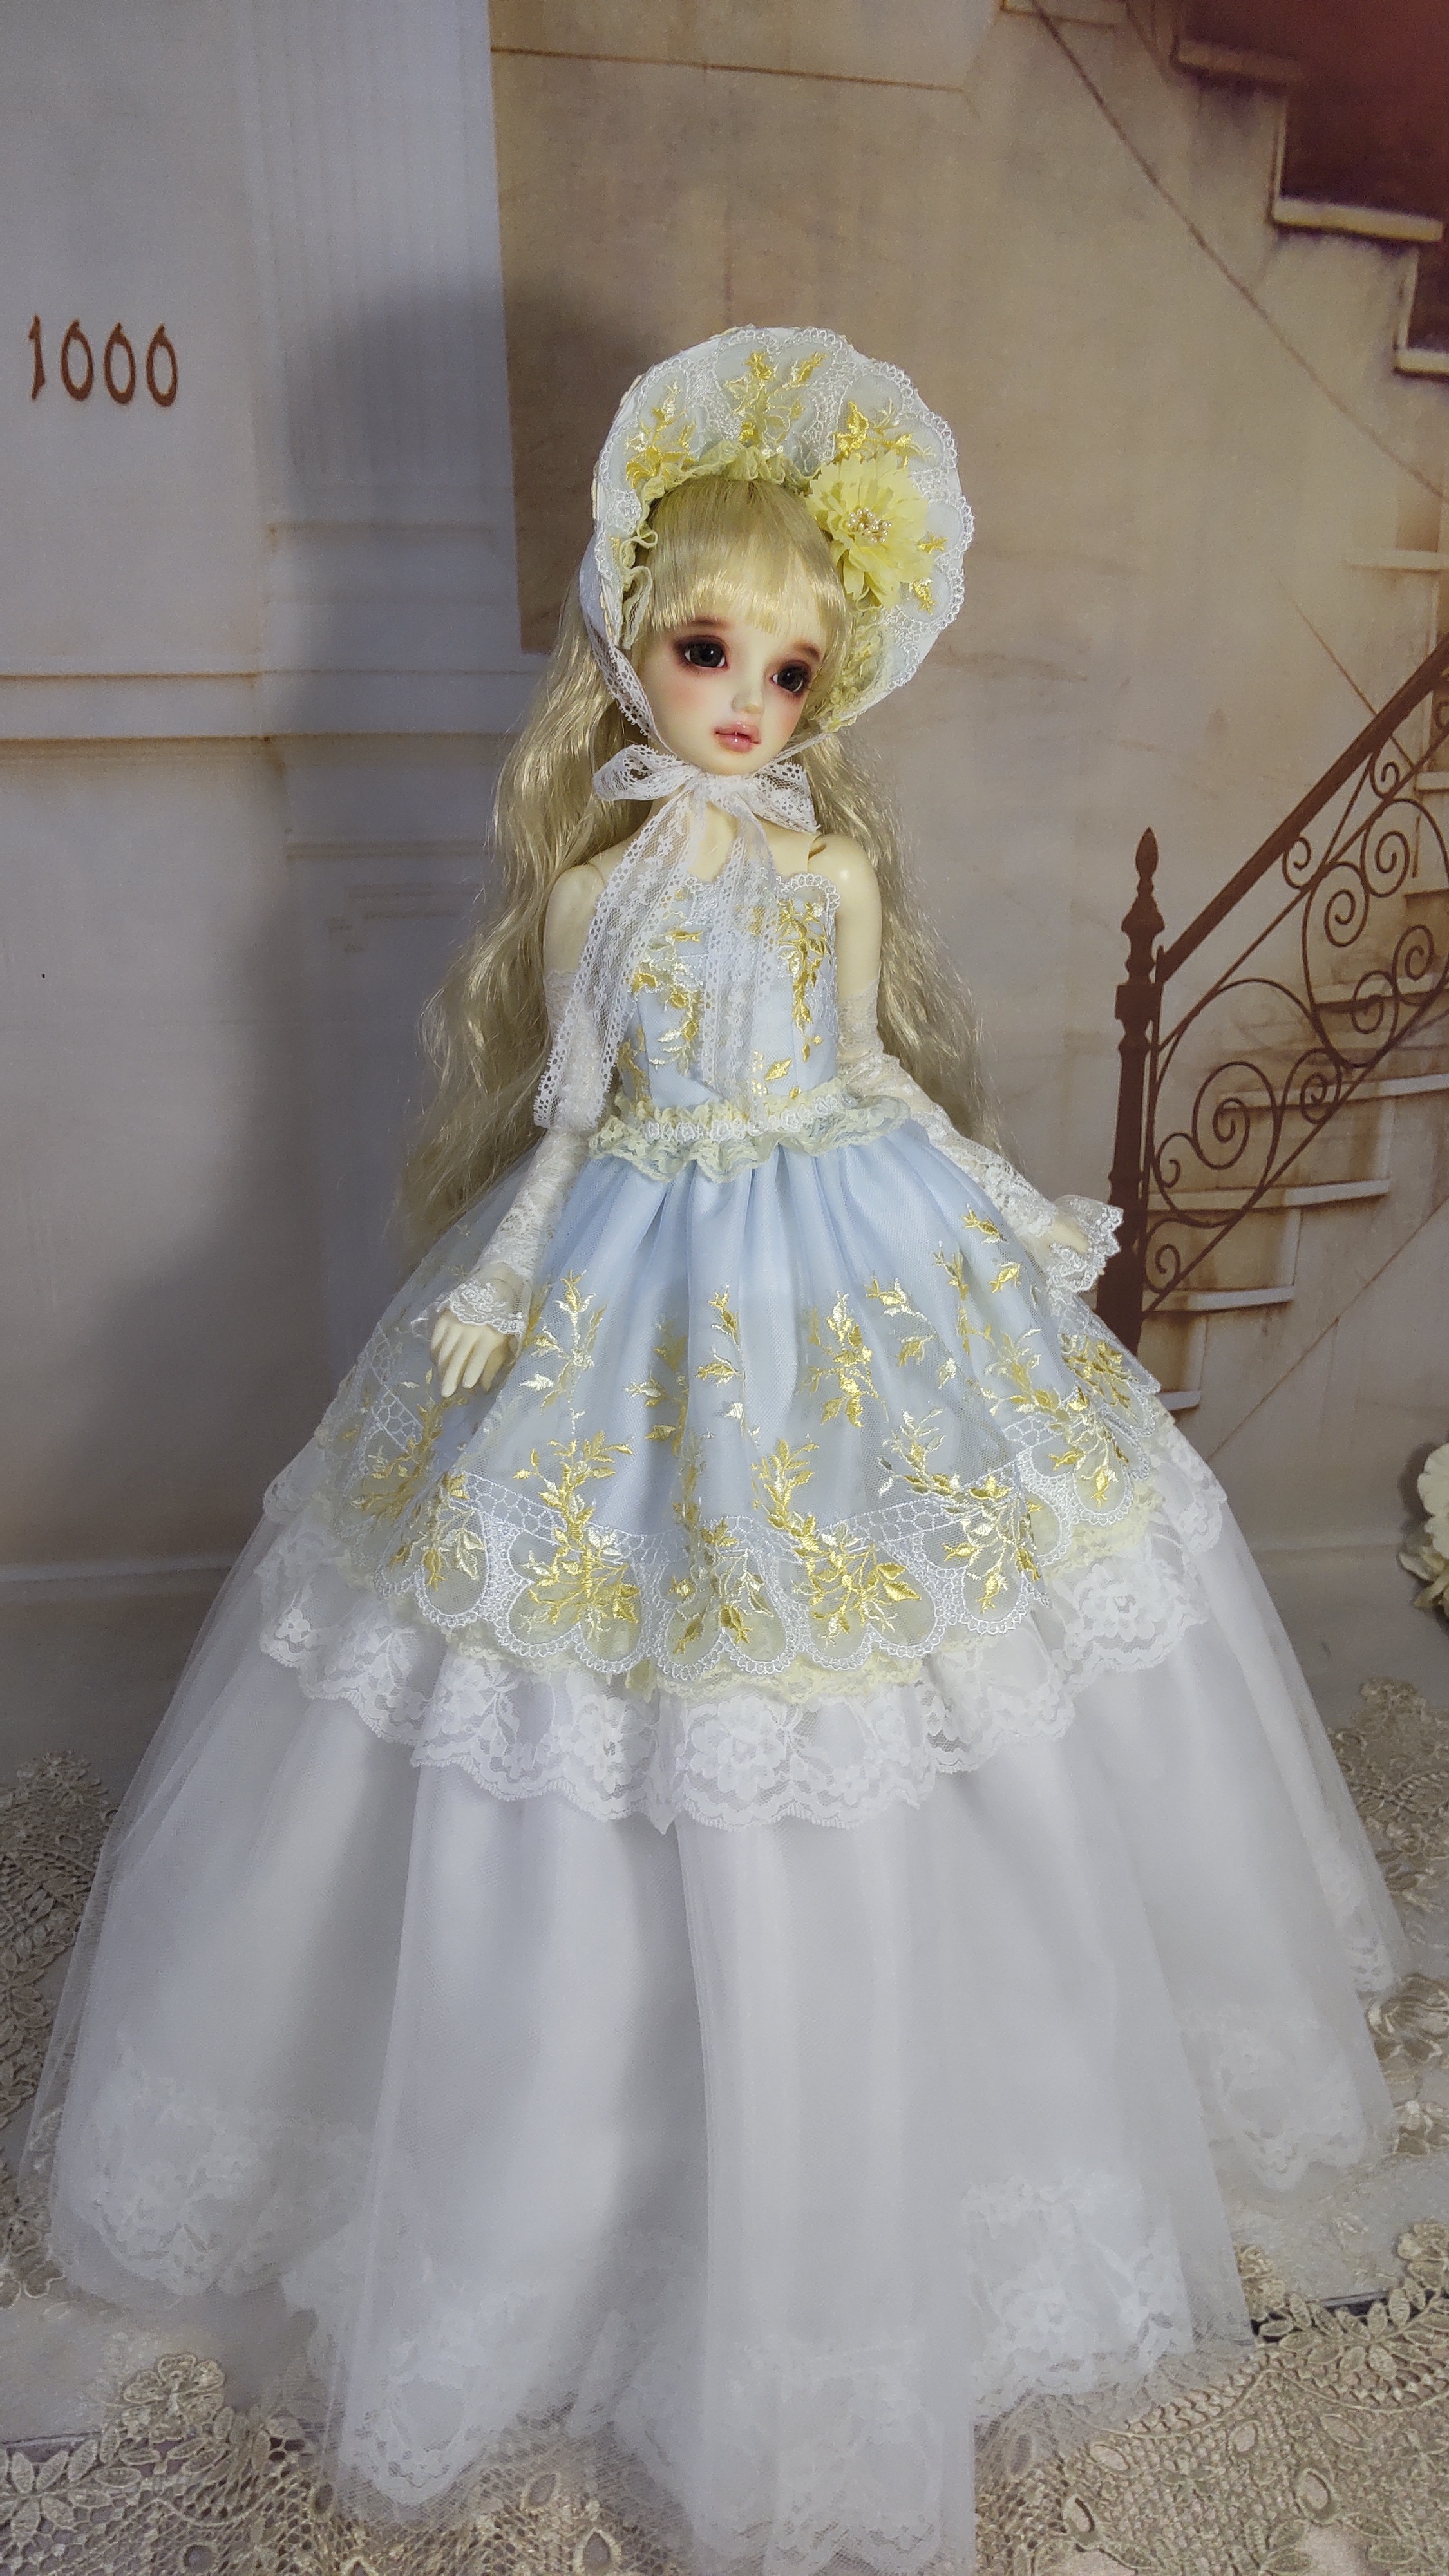 レモンイエローの花のドレス